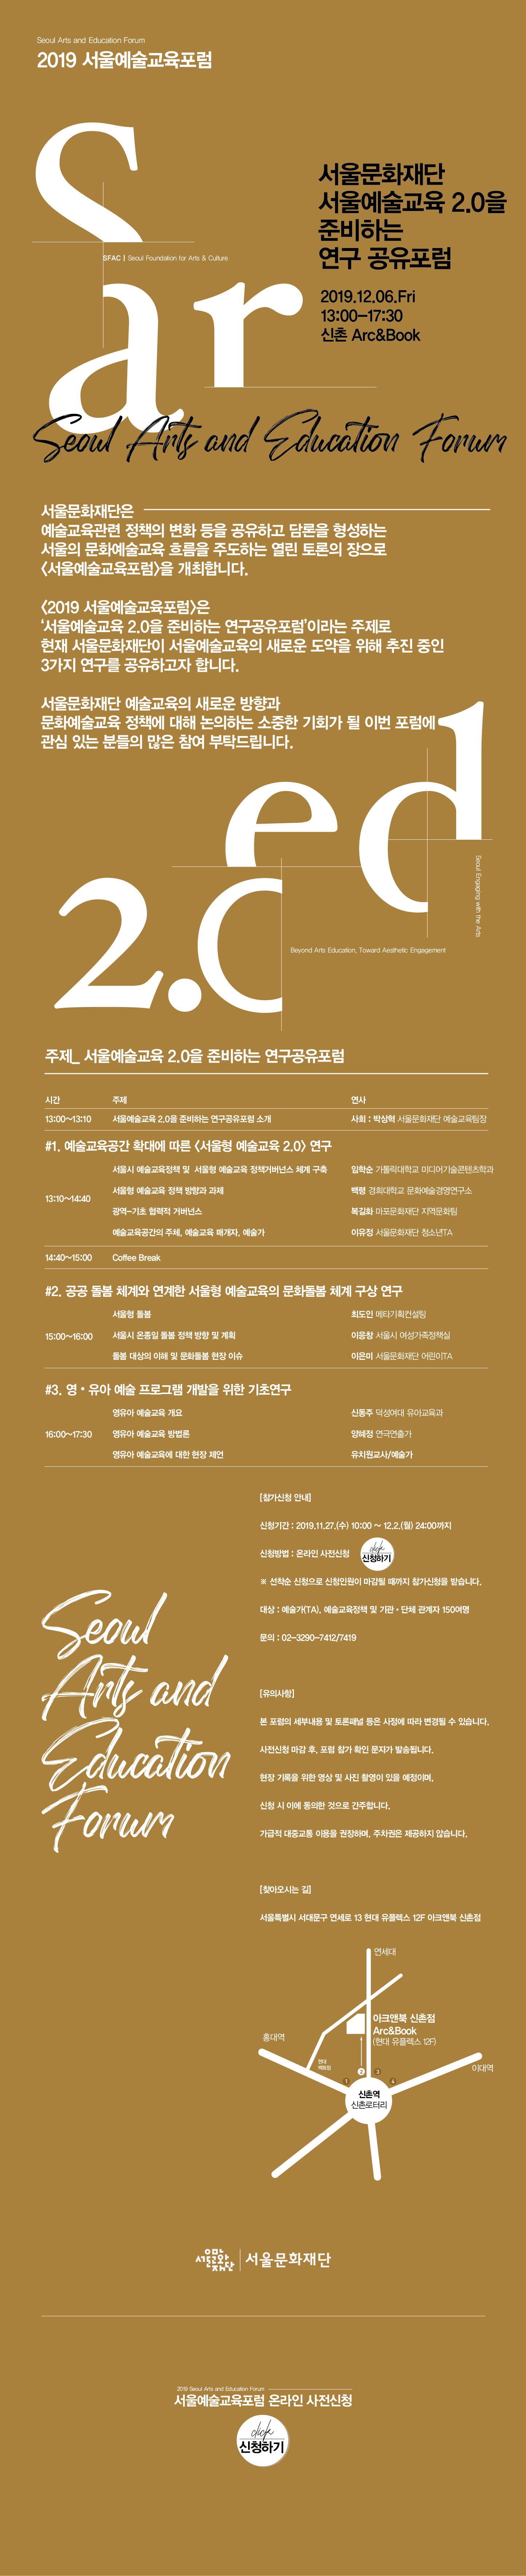 2019 서울예술교육포럼, 12.6(금) 신촌 아크앤북에서 개최